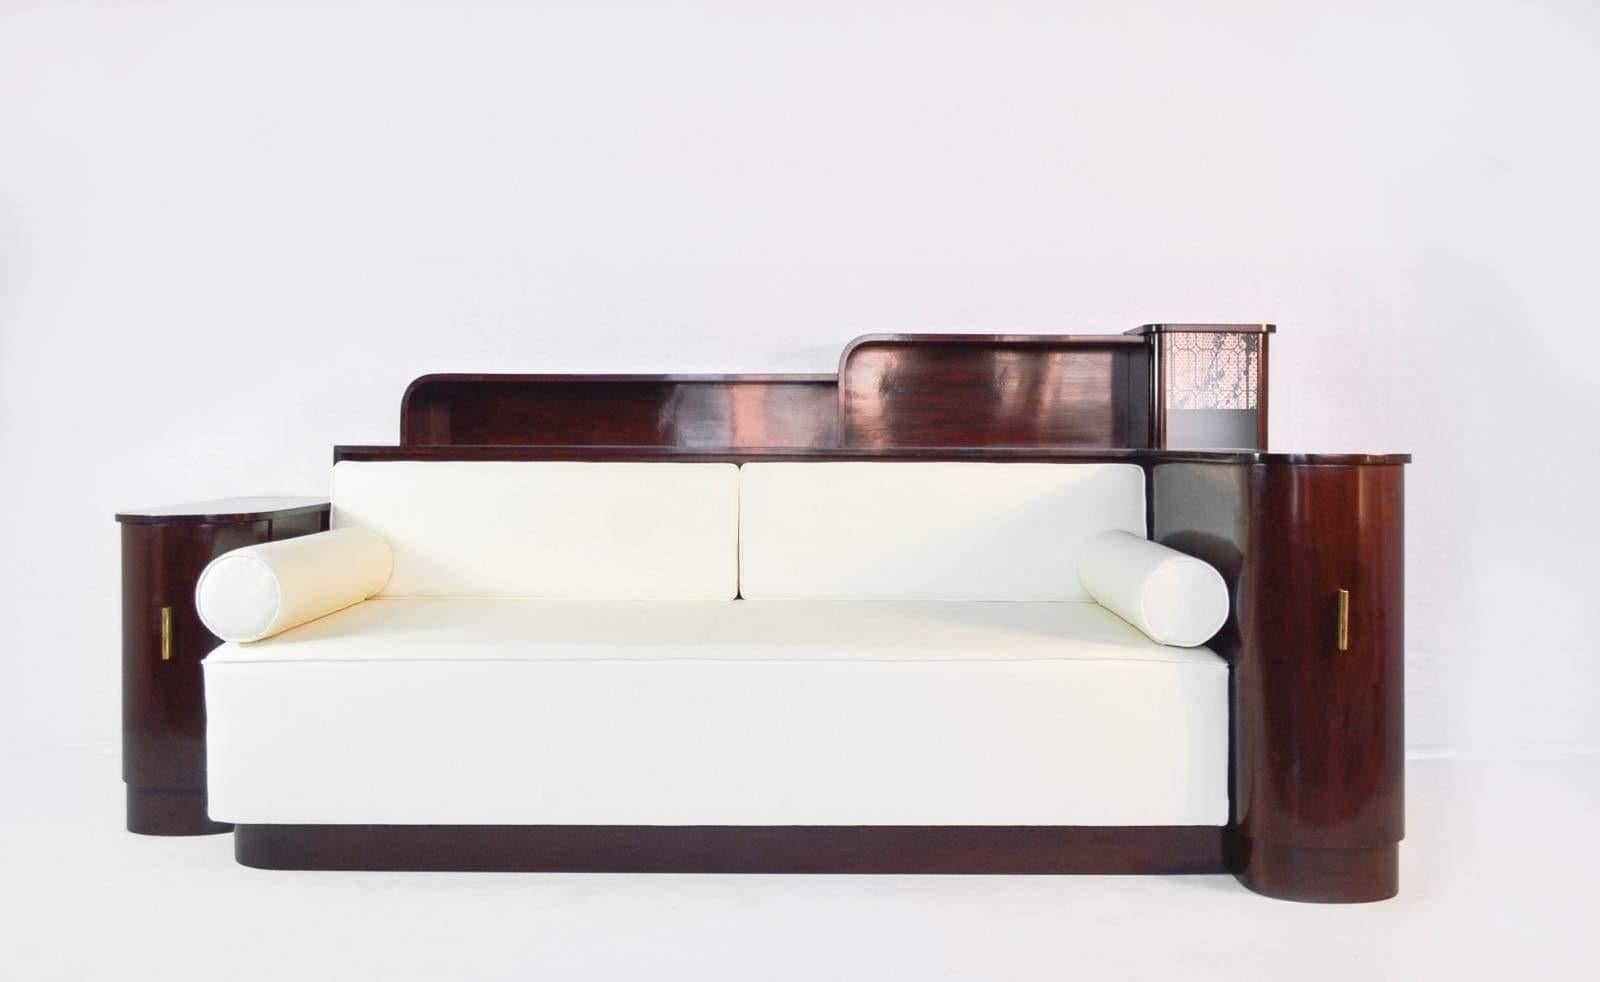 Merveilleux, design haut de gamme, authentique canapé Art Déco des années 1920 avec des vitrines en bois de noyer et une paire de chaises longues assorties originaires de France. Des lignes magnifiques, un style étonnant et élégant. Les vitrines